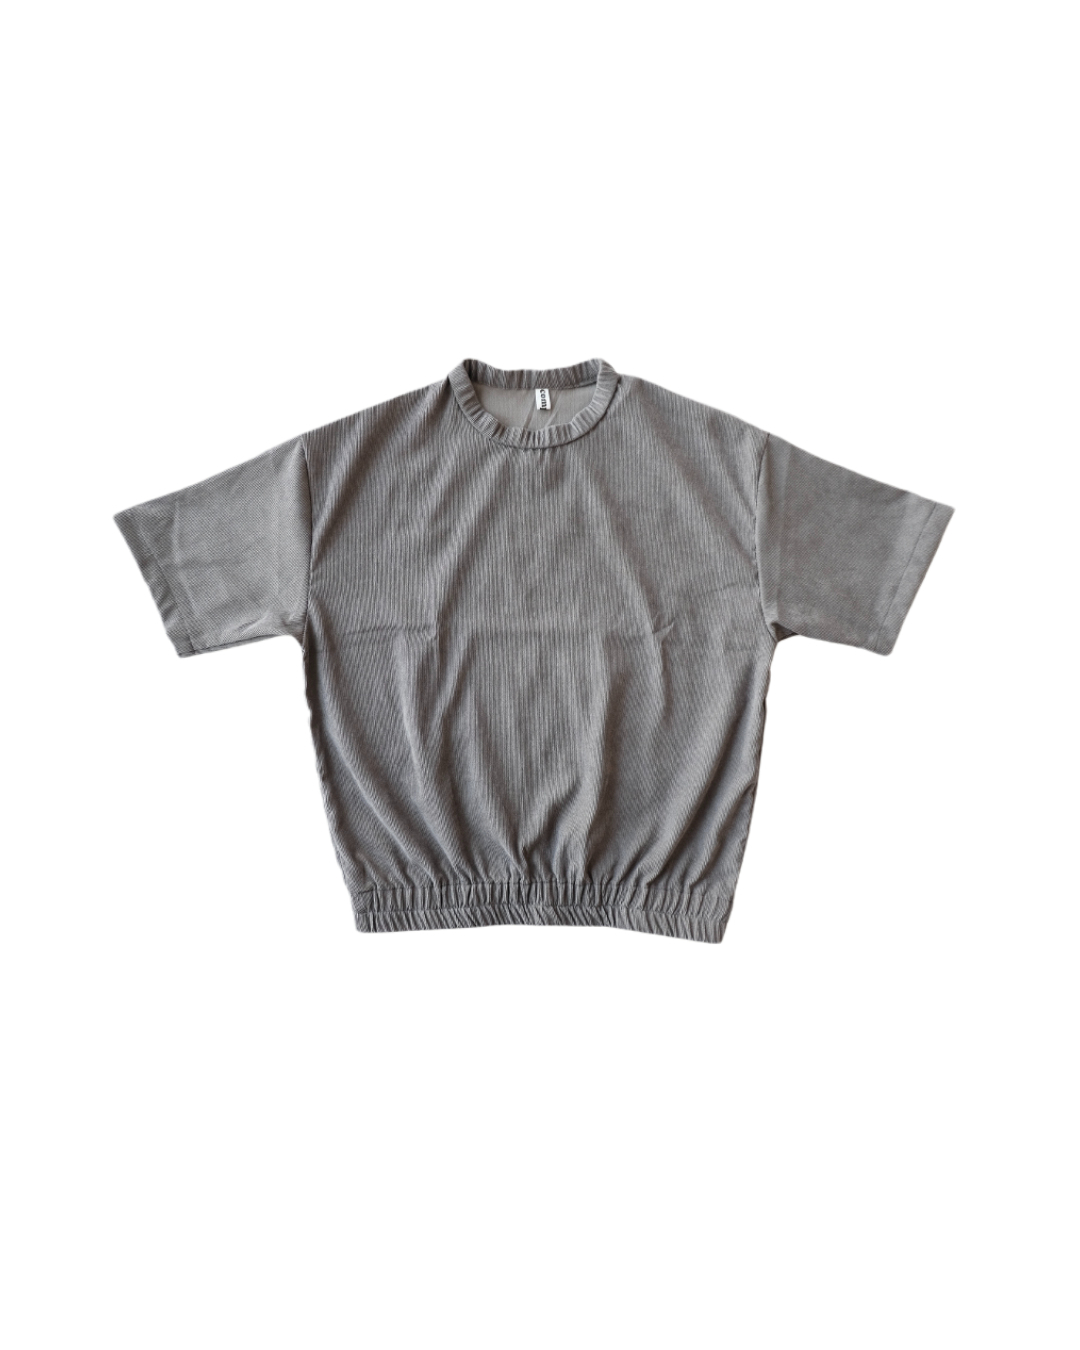 Haus Shortsleeved Sweatshirt in Dark Grey